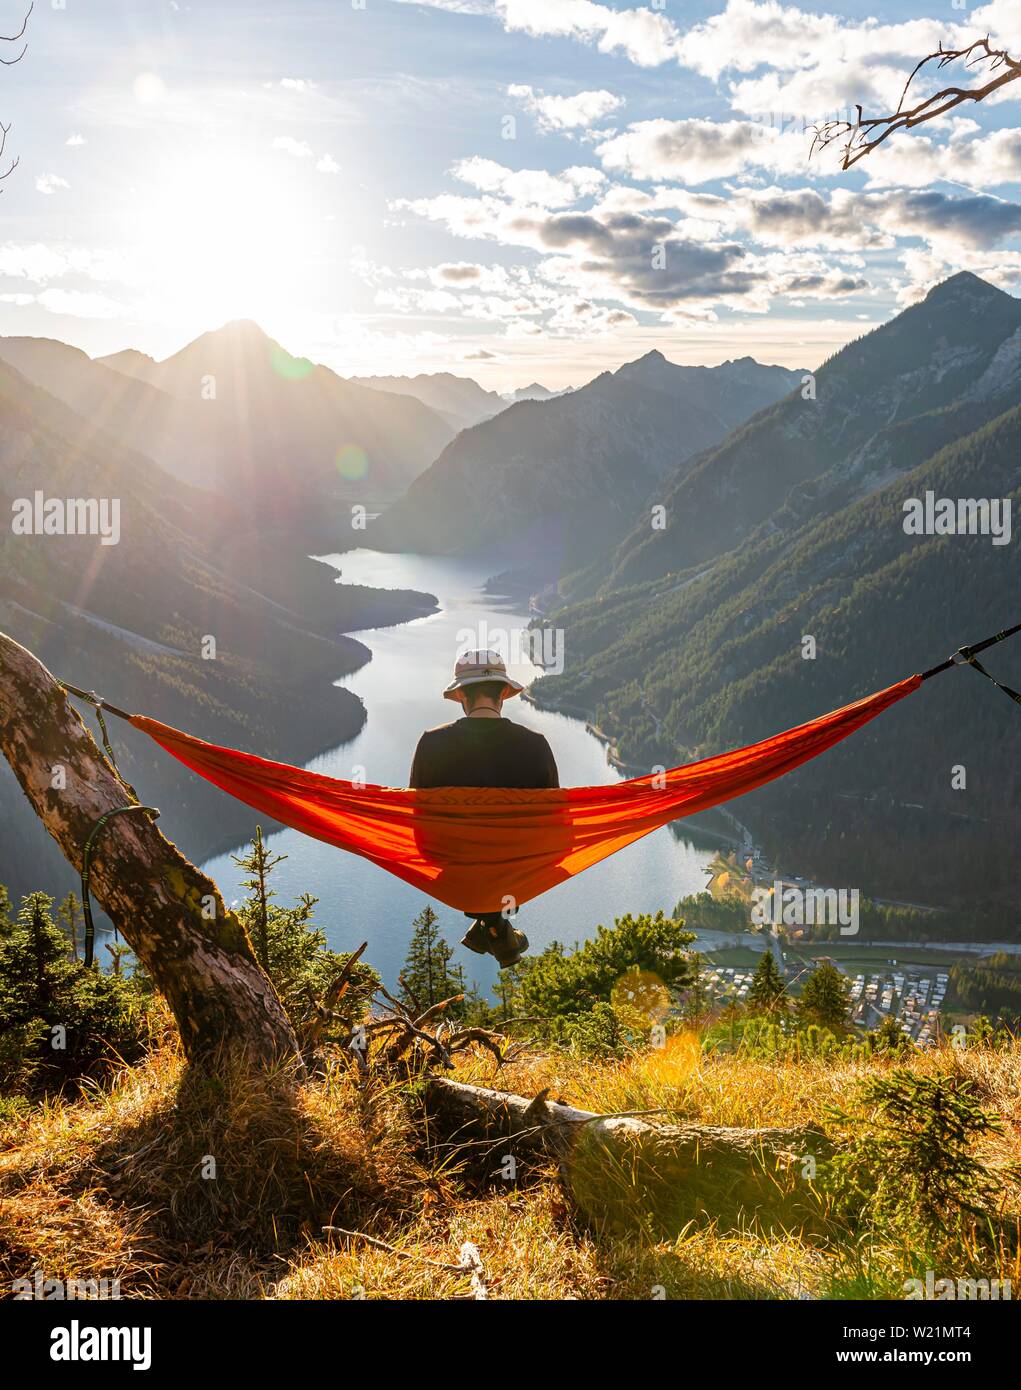 Mann mit einem Sonnenhut in einem orange Hängematte sitzen, Panoramablick auf Berge mit See, Plansee, Tirol, Österreich Stockfoto